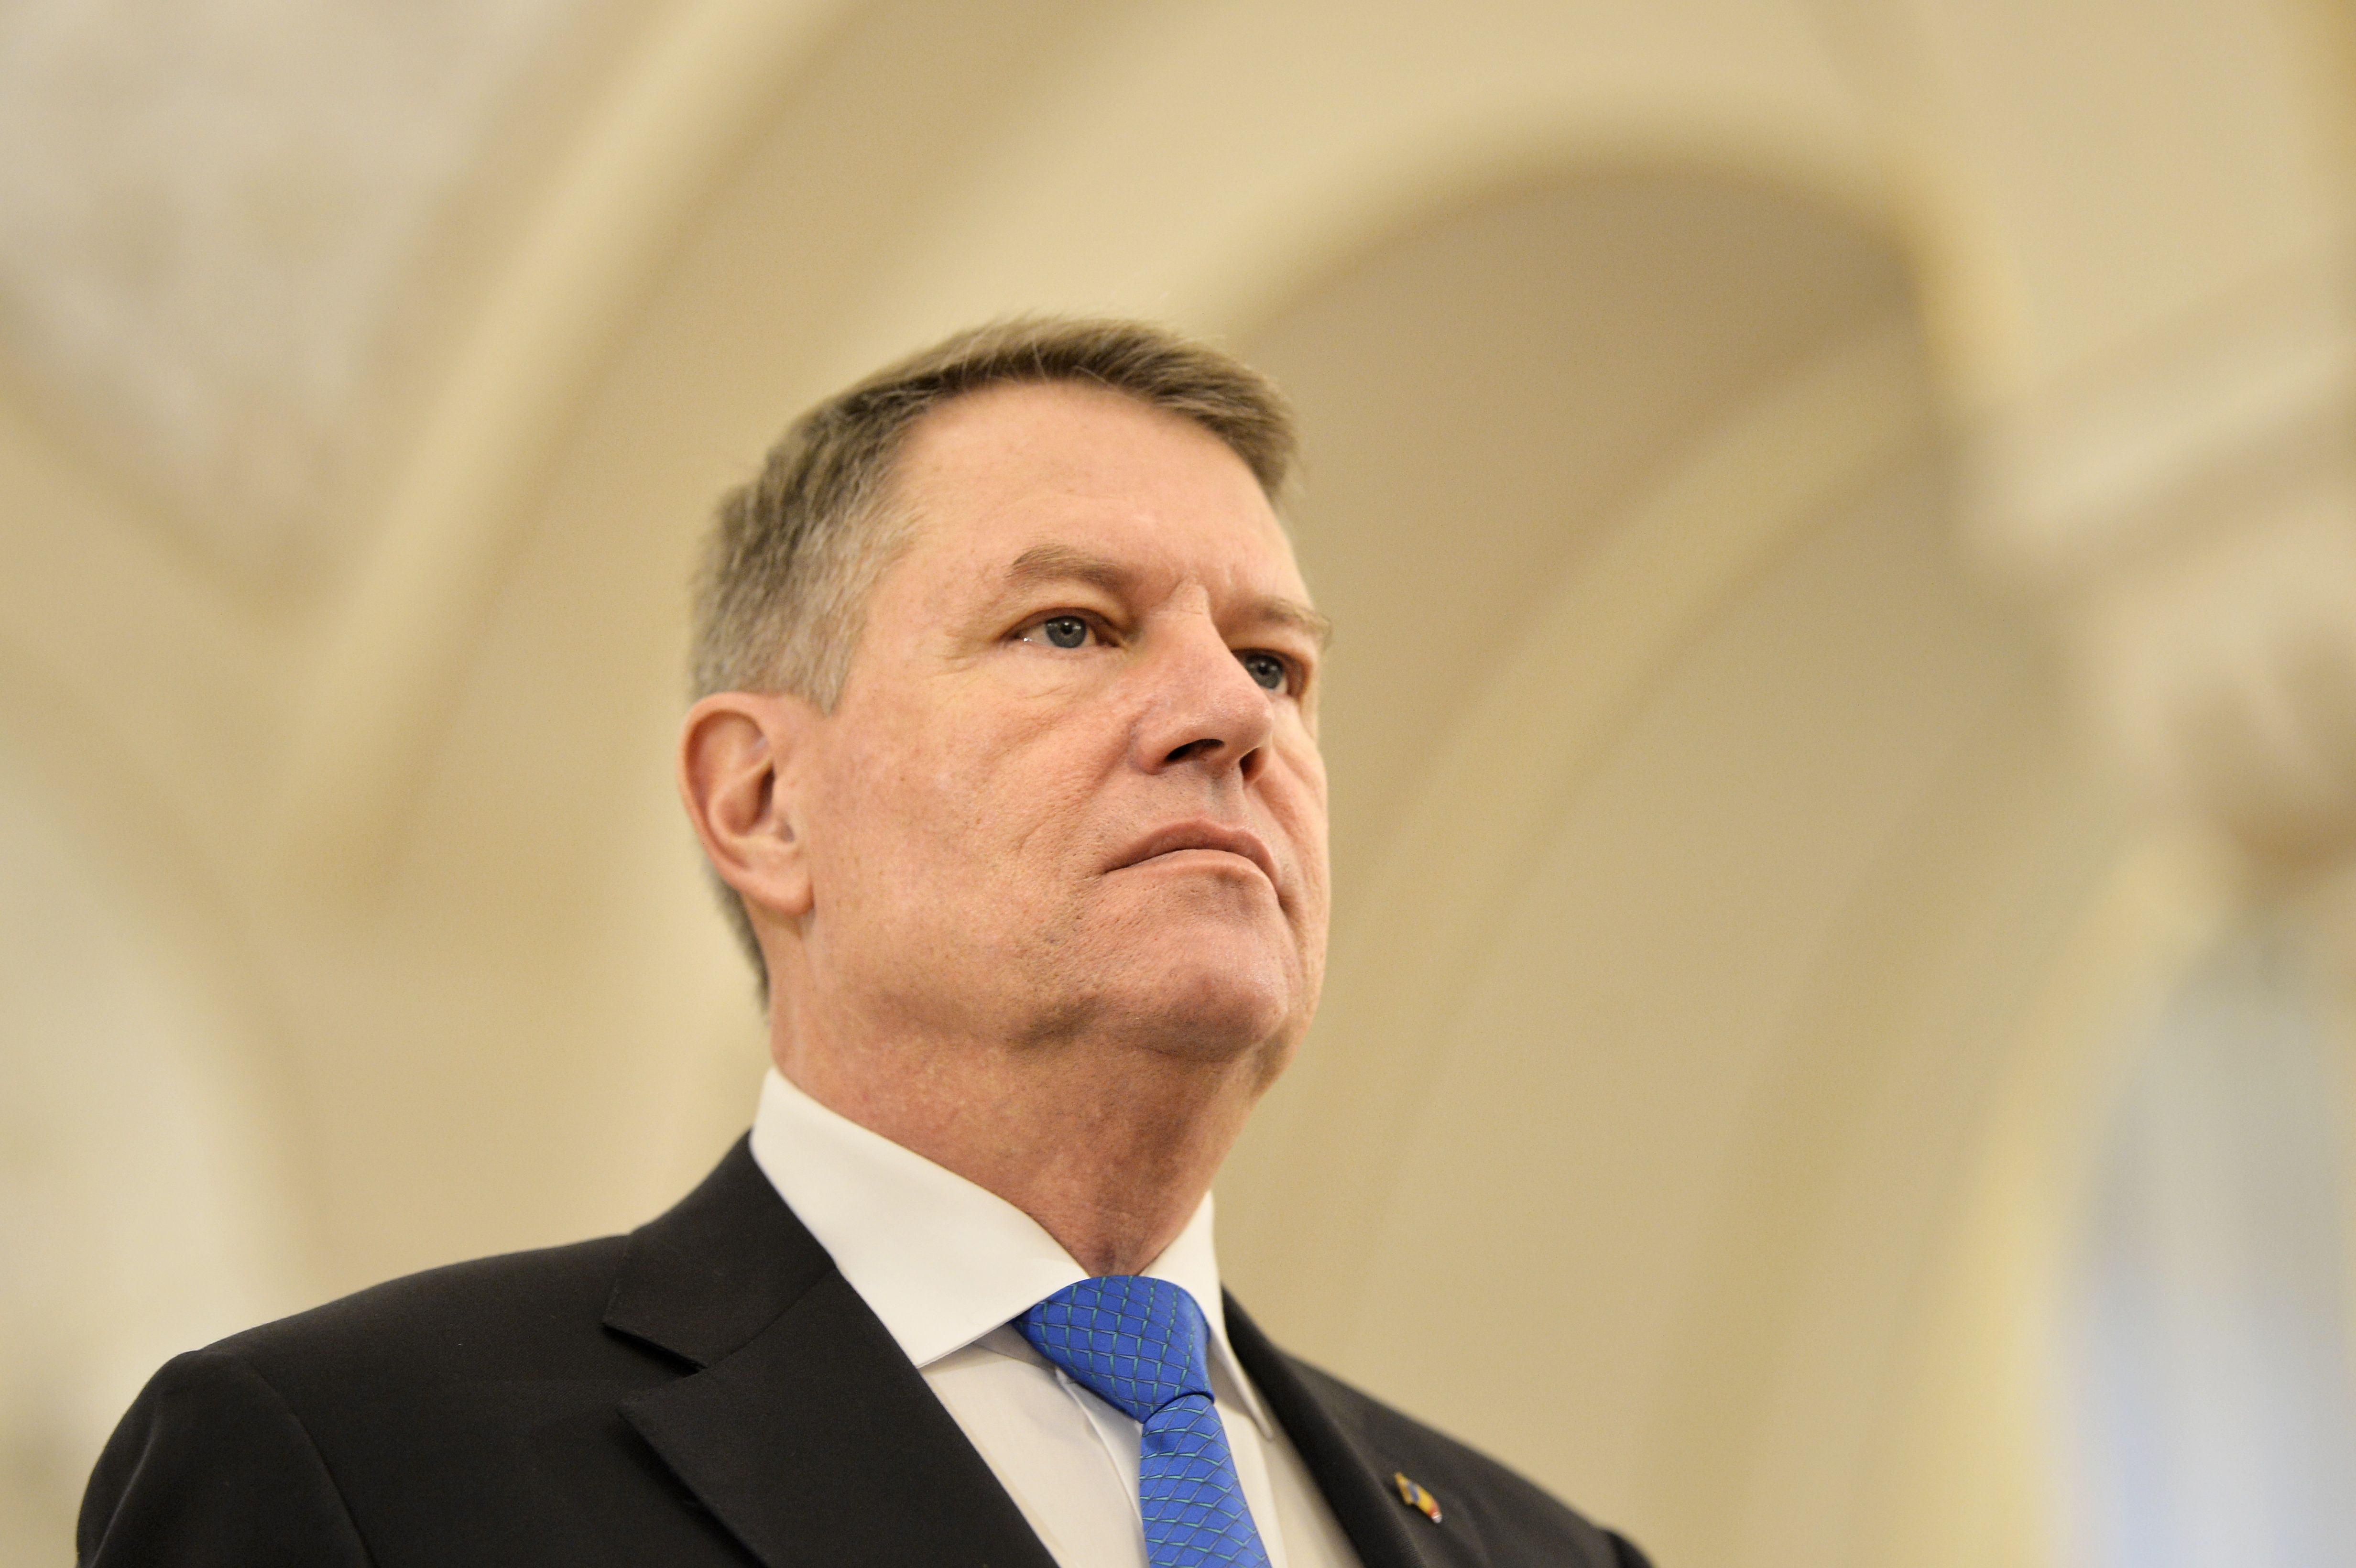 Preşedintele Iohannis aruncă săgeţi: Guvernarea PSD a eşuat. Bugetul e cel al ruşinii naţionale, nerealist, supraevaluat şi întârziat. ”PSD e incompetent şi incapabil să conducă România”